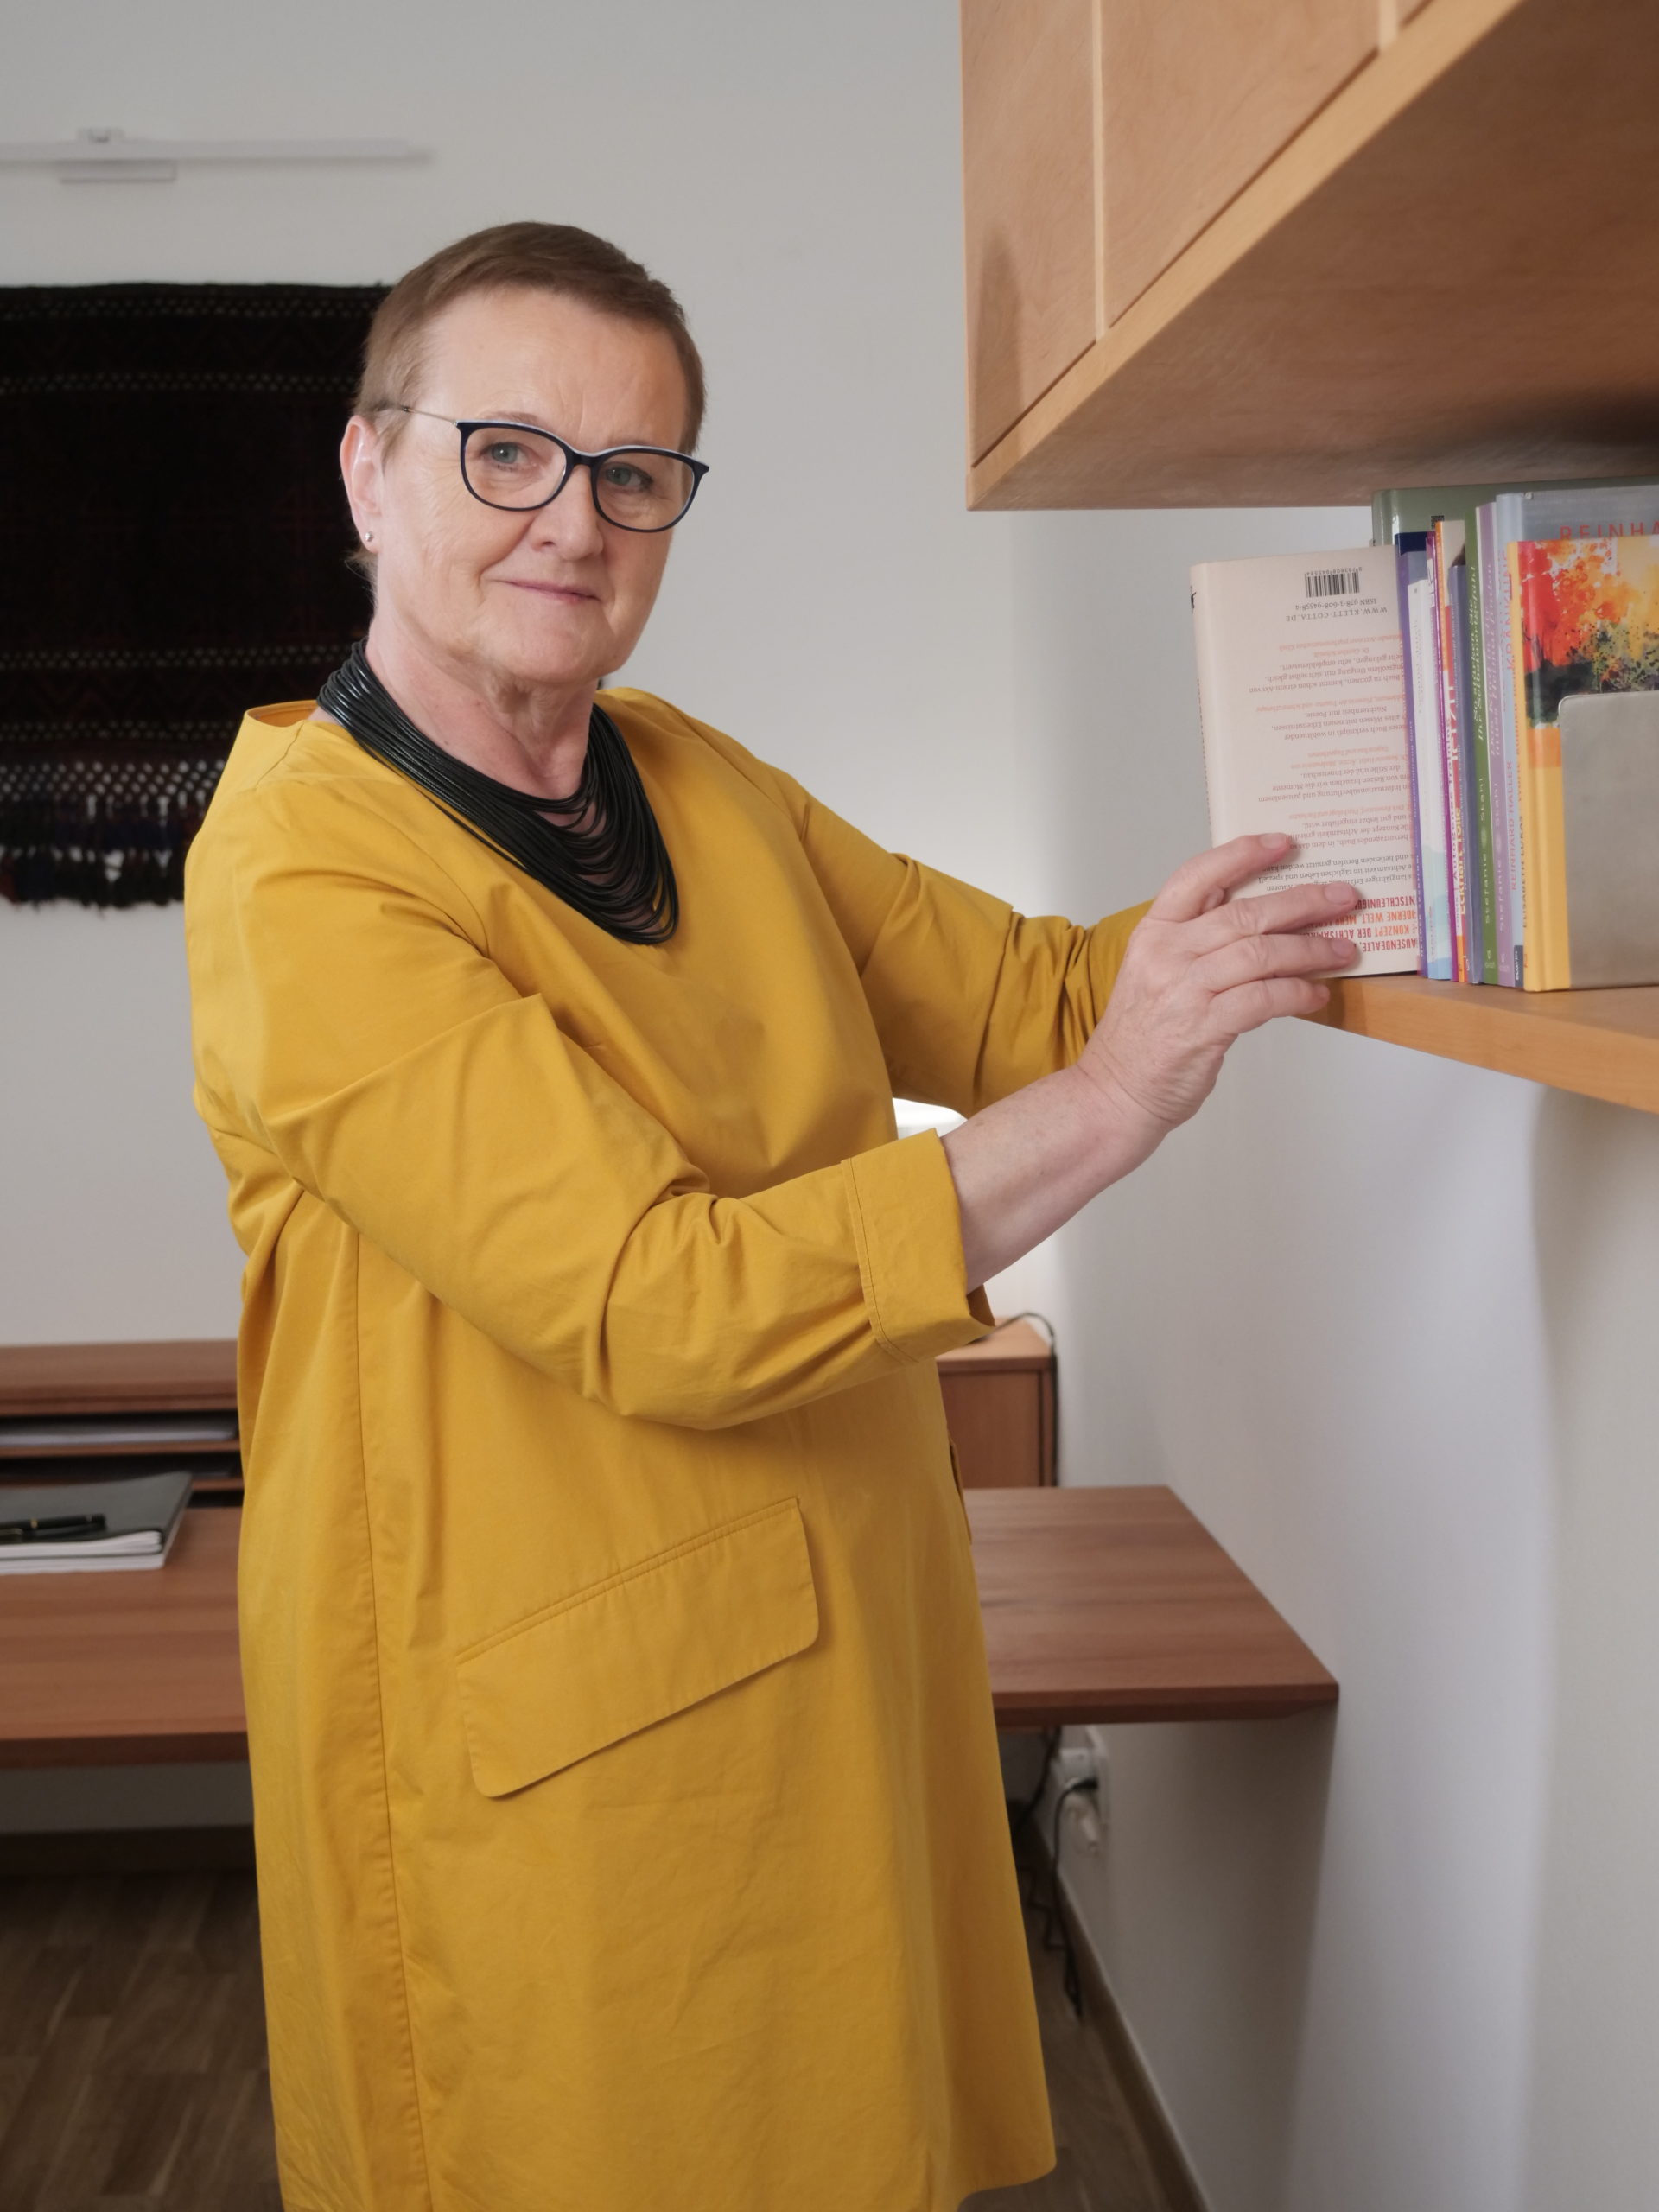 Psychotherapeutin Elfriede Ulbl nimmt ein Buch aus einem Bücherregal